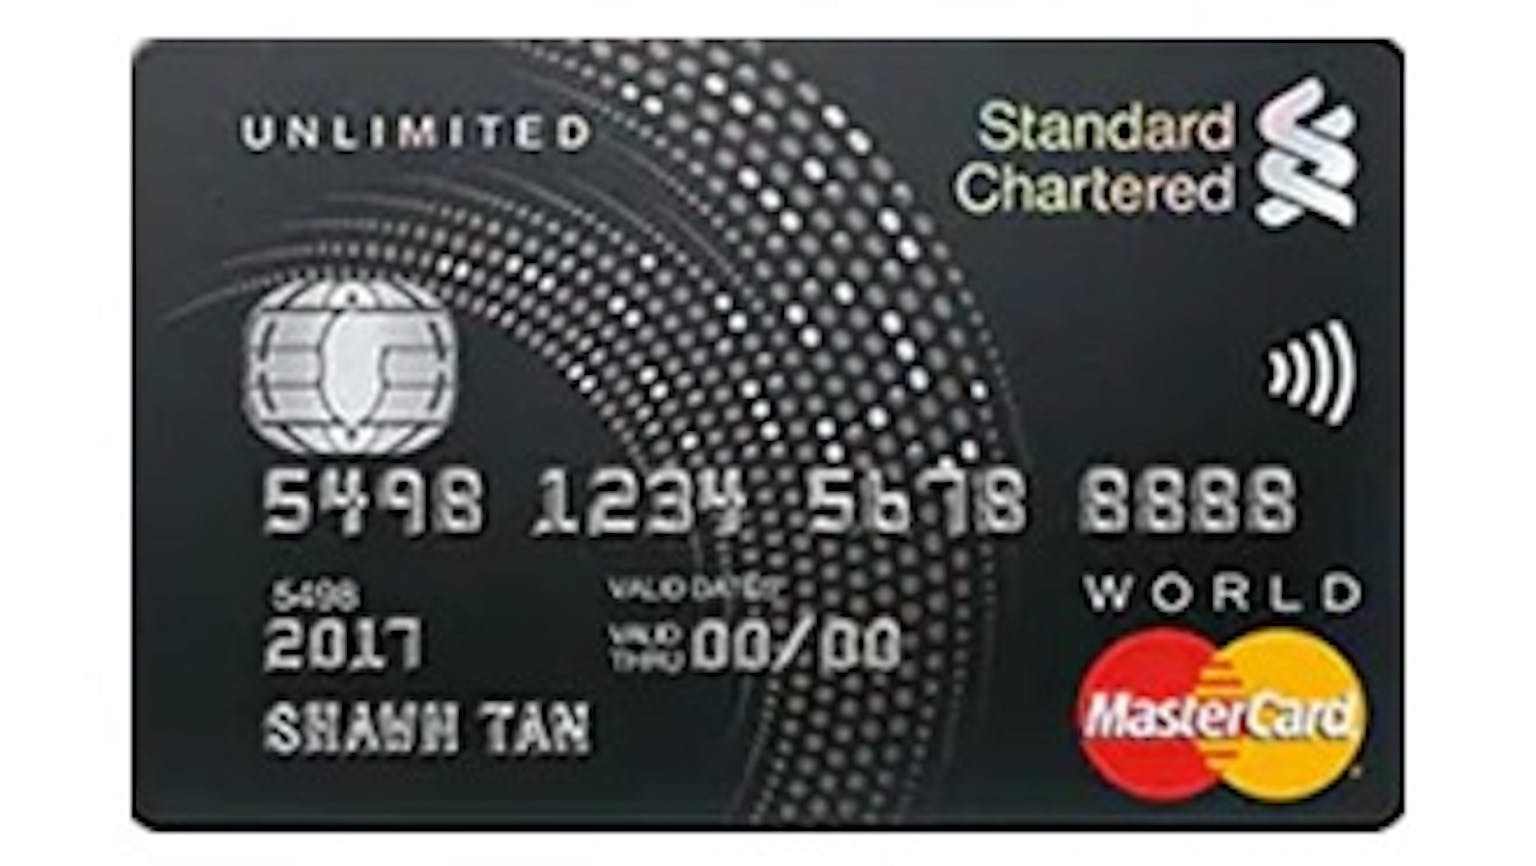 Standard Chartered Unlimited Cashback Credit Card